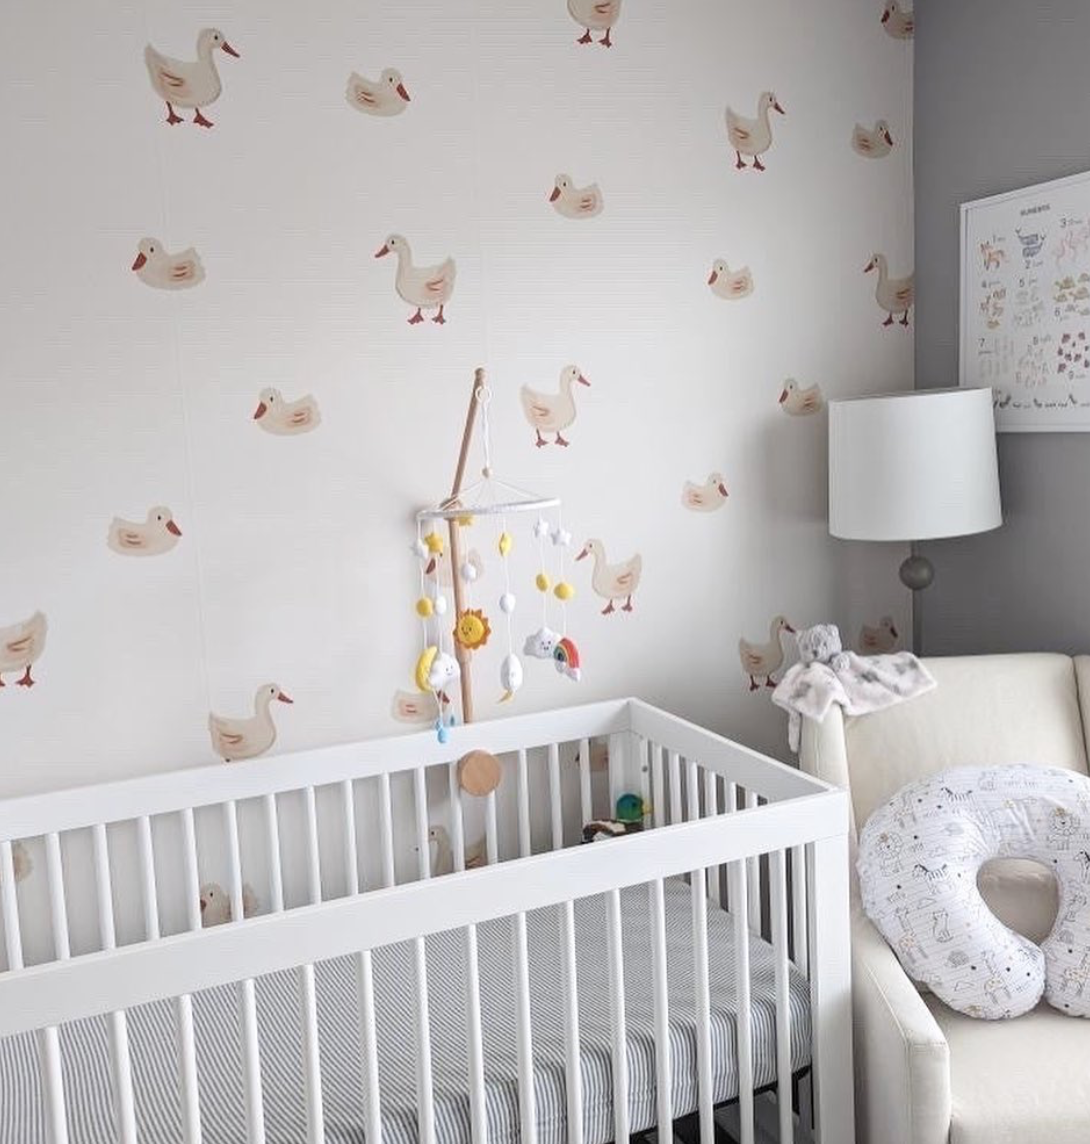 Duck Wallpaper in Nursery